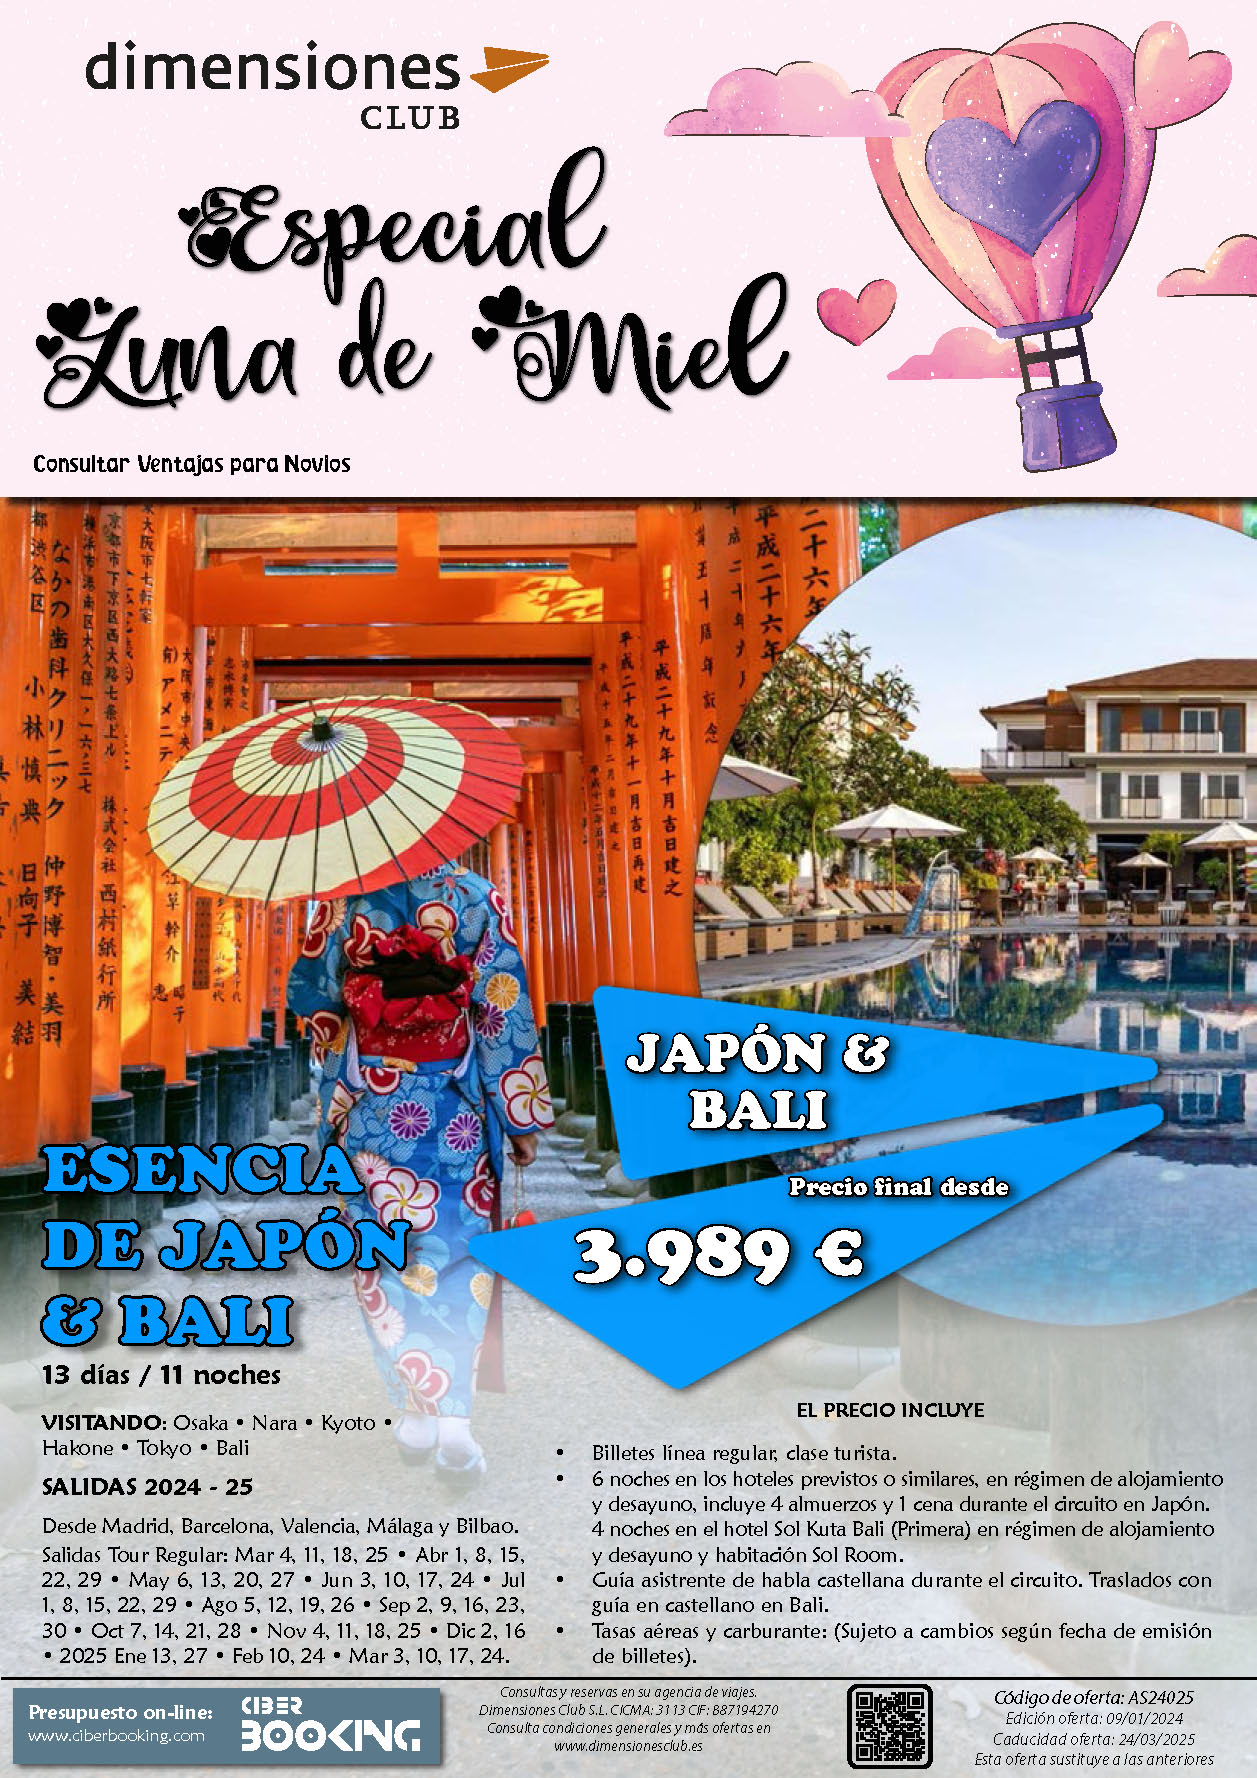 Oferta Dimensiones Club Luna de Miel Esencia de Japon y Bali 13 dias salidas desde Madrid Barcelona Bilbao Valencia Malaga Marzo 2024 a Marzo 2025